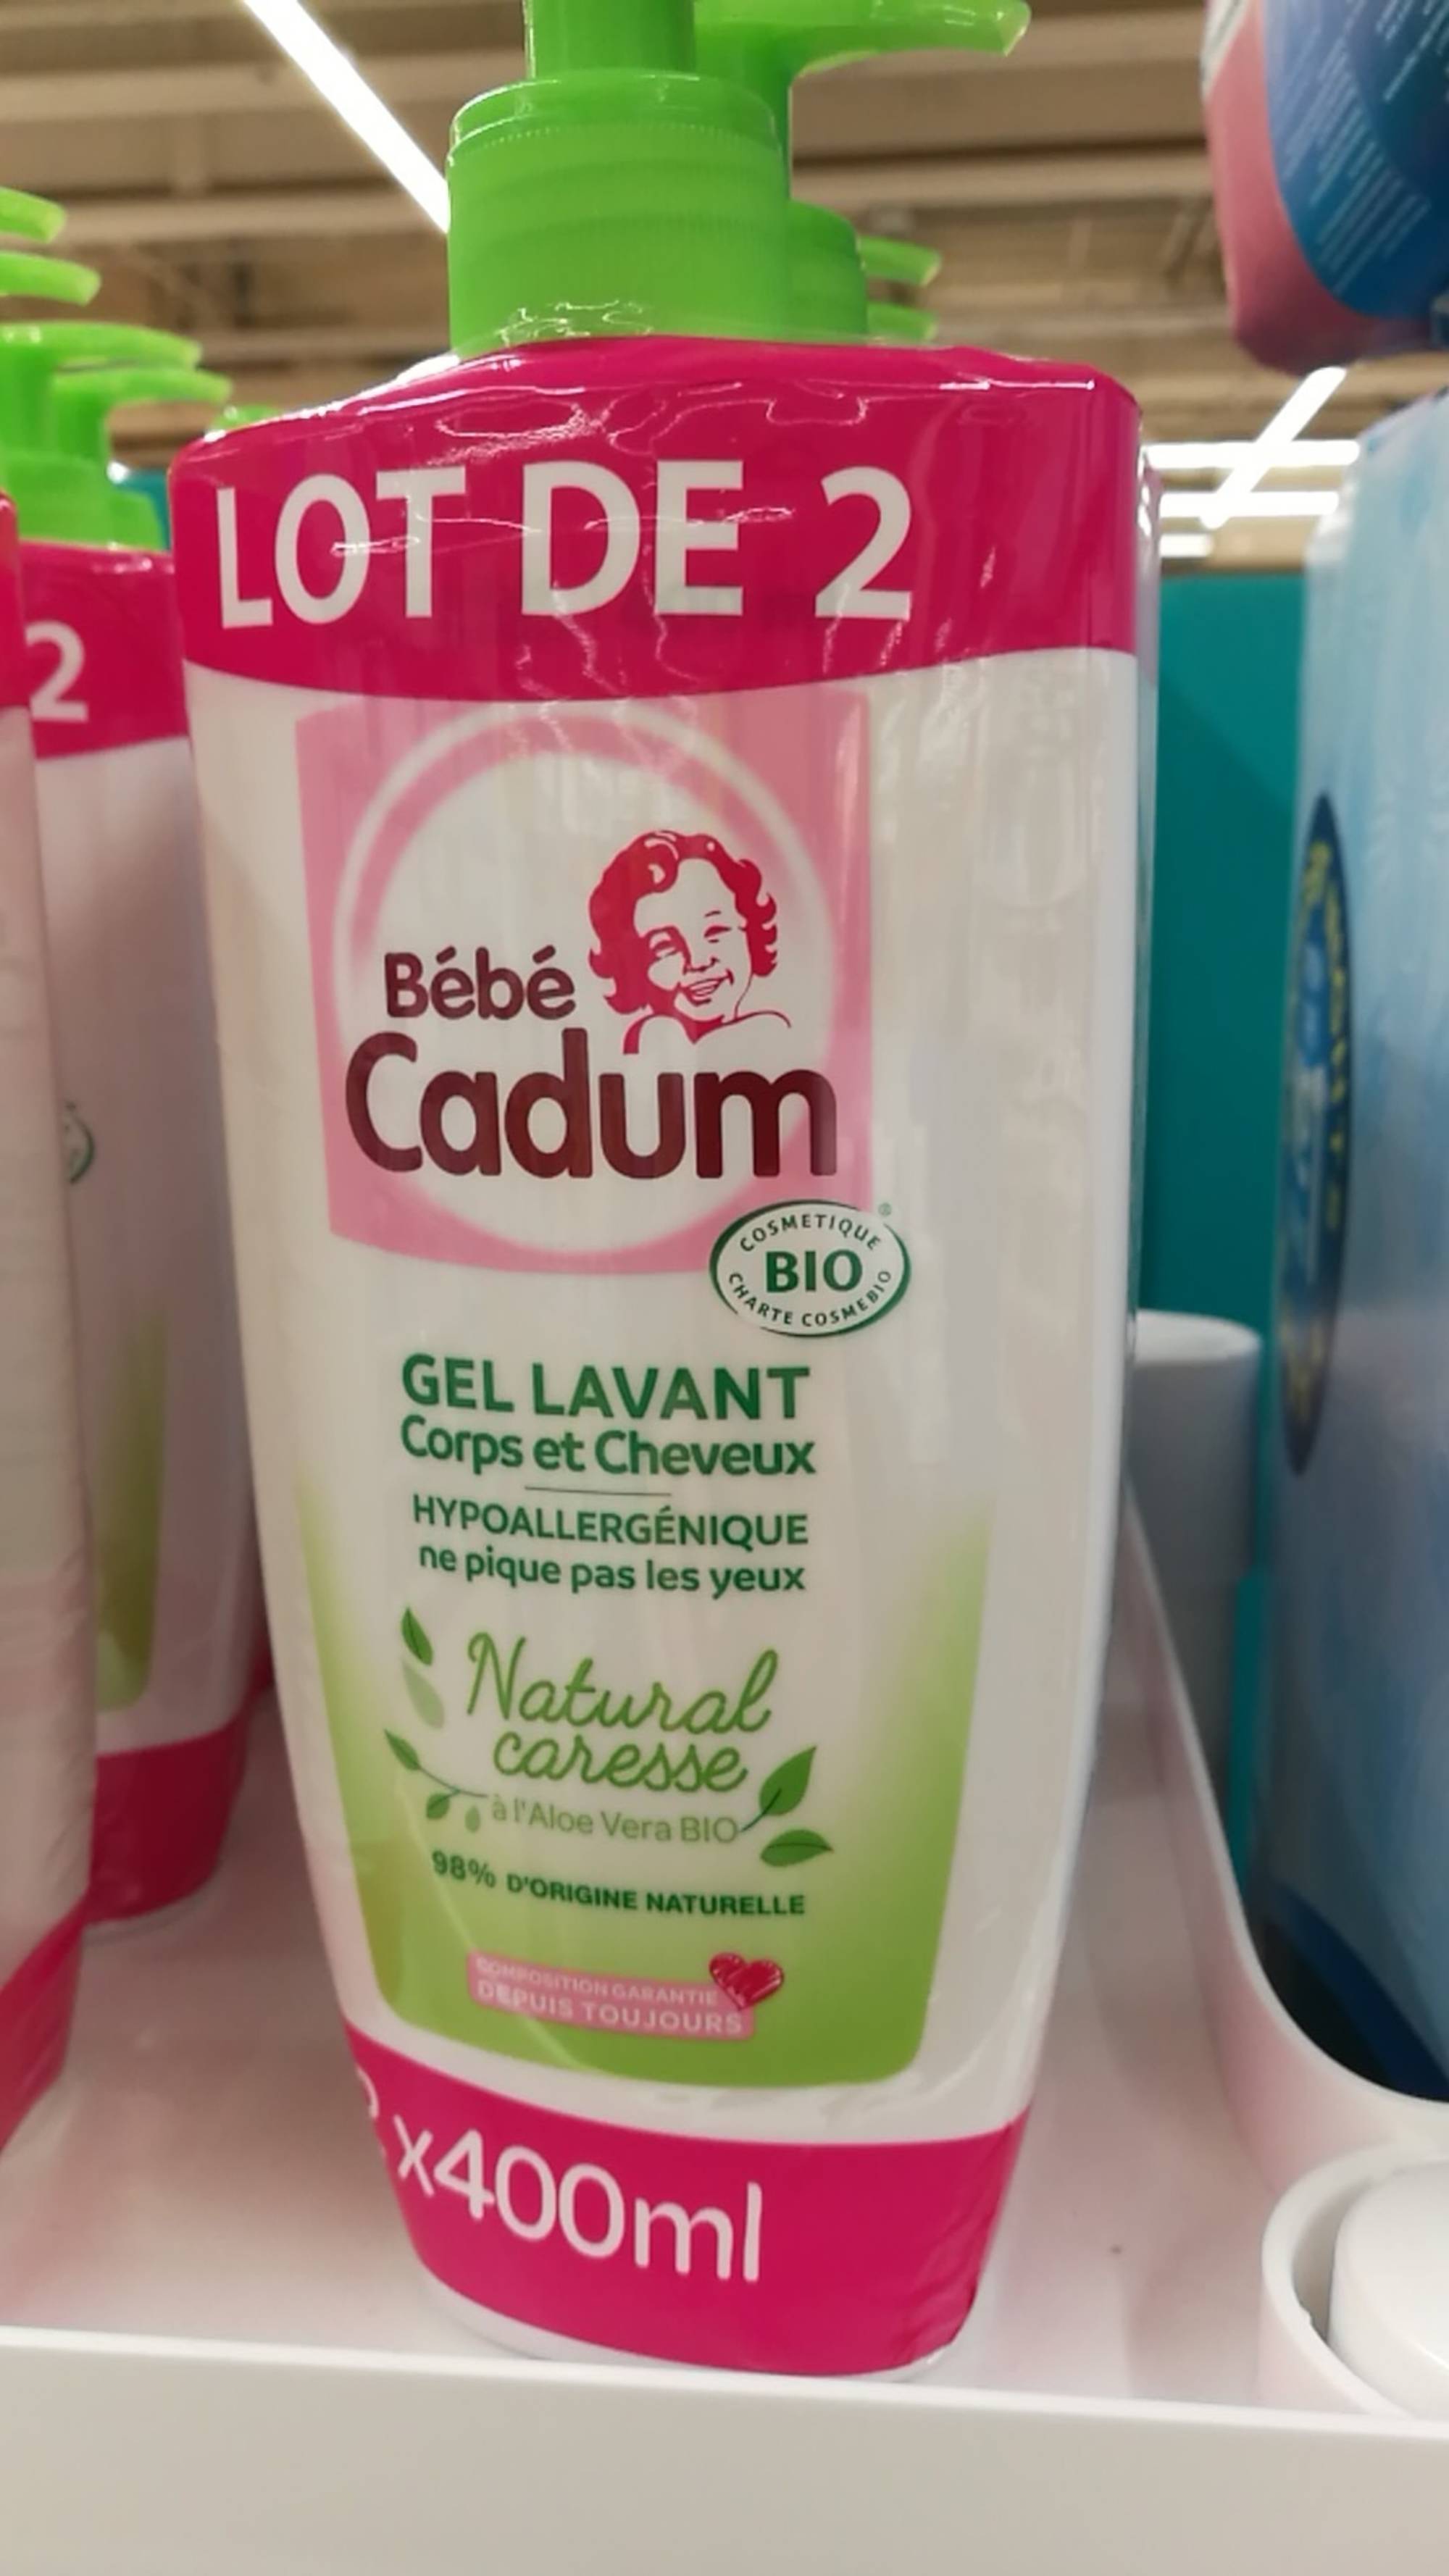 CADUM - Bébé cadum - Gel lavant corps et cheveux natural caresse